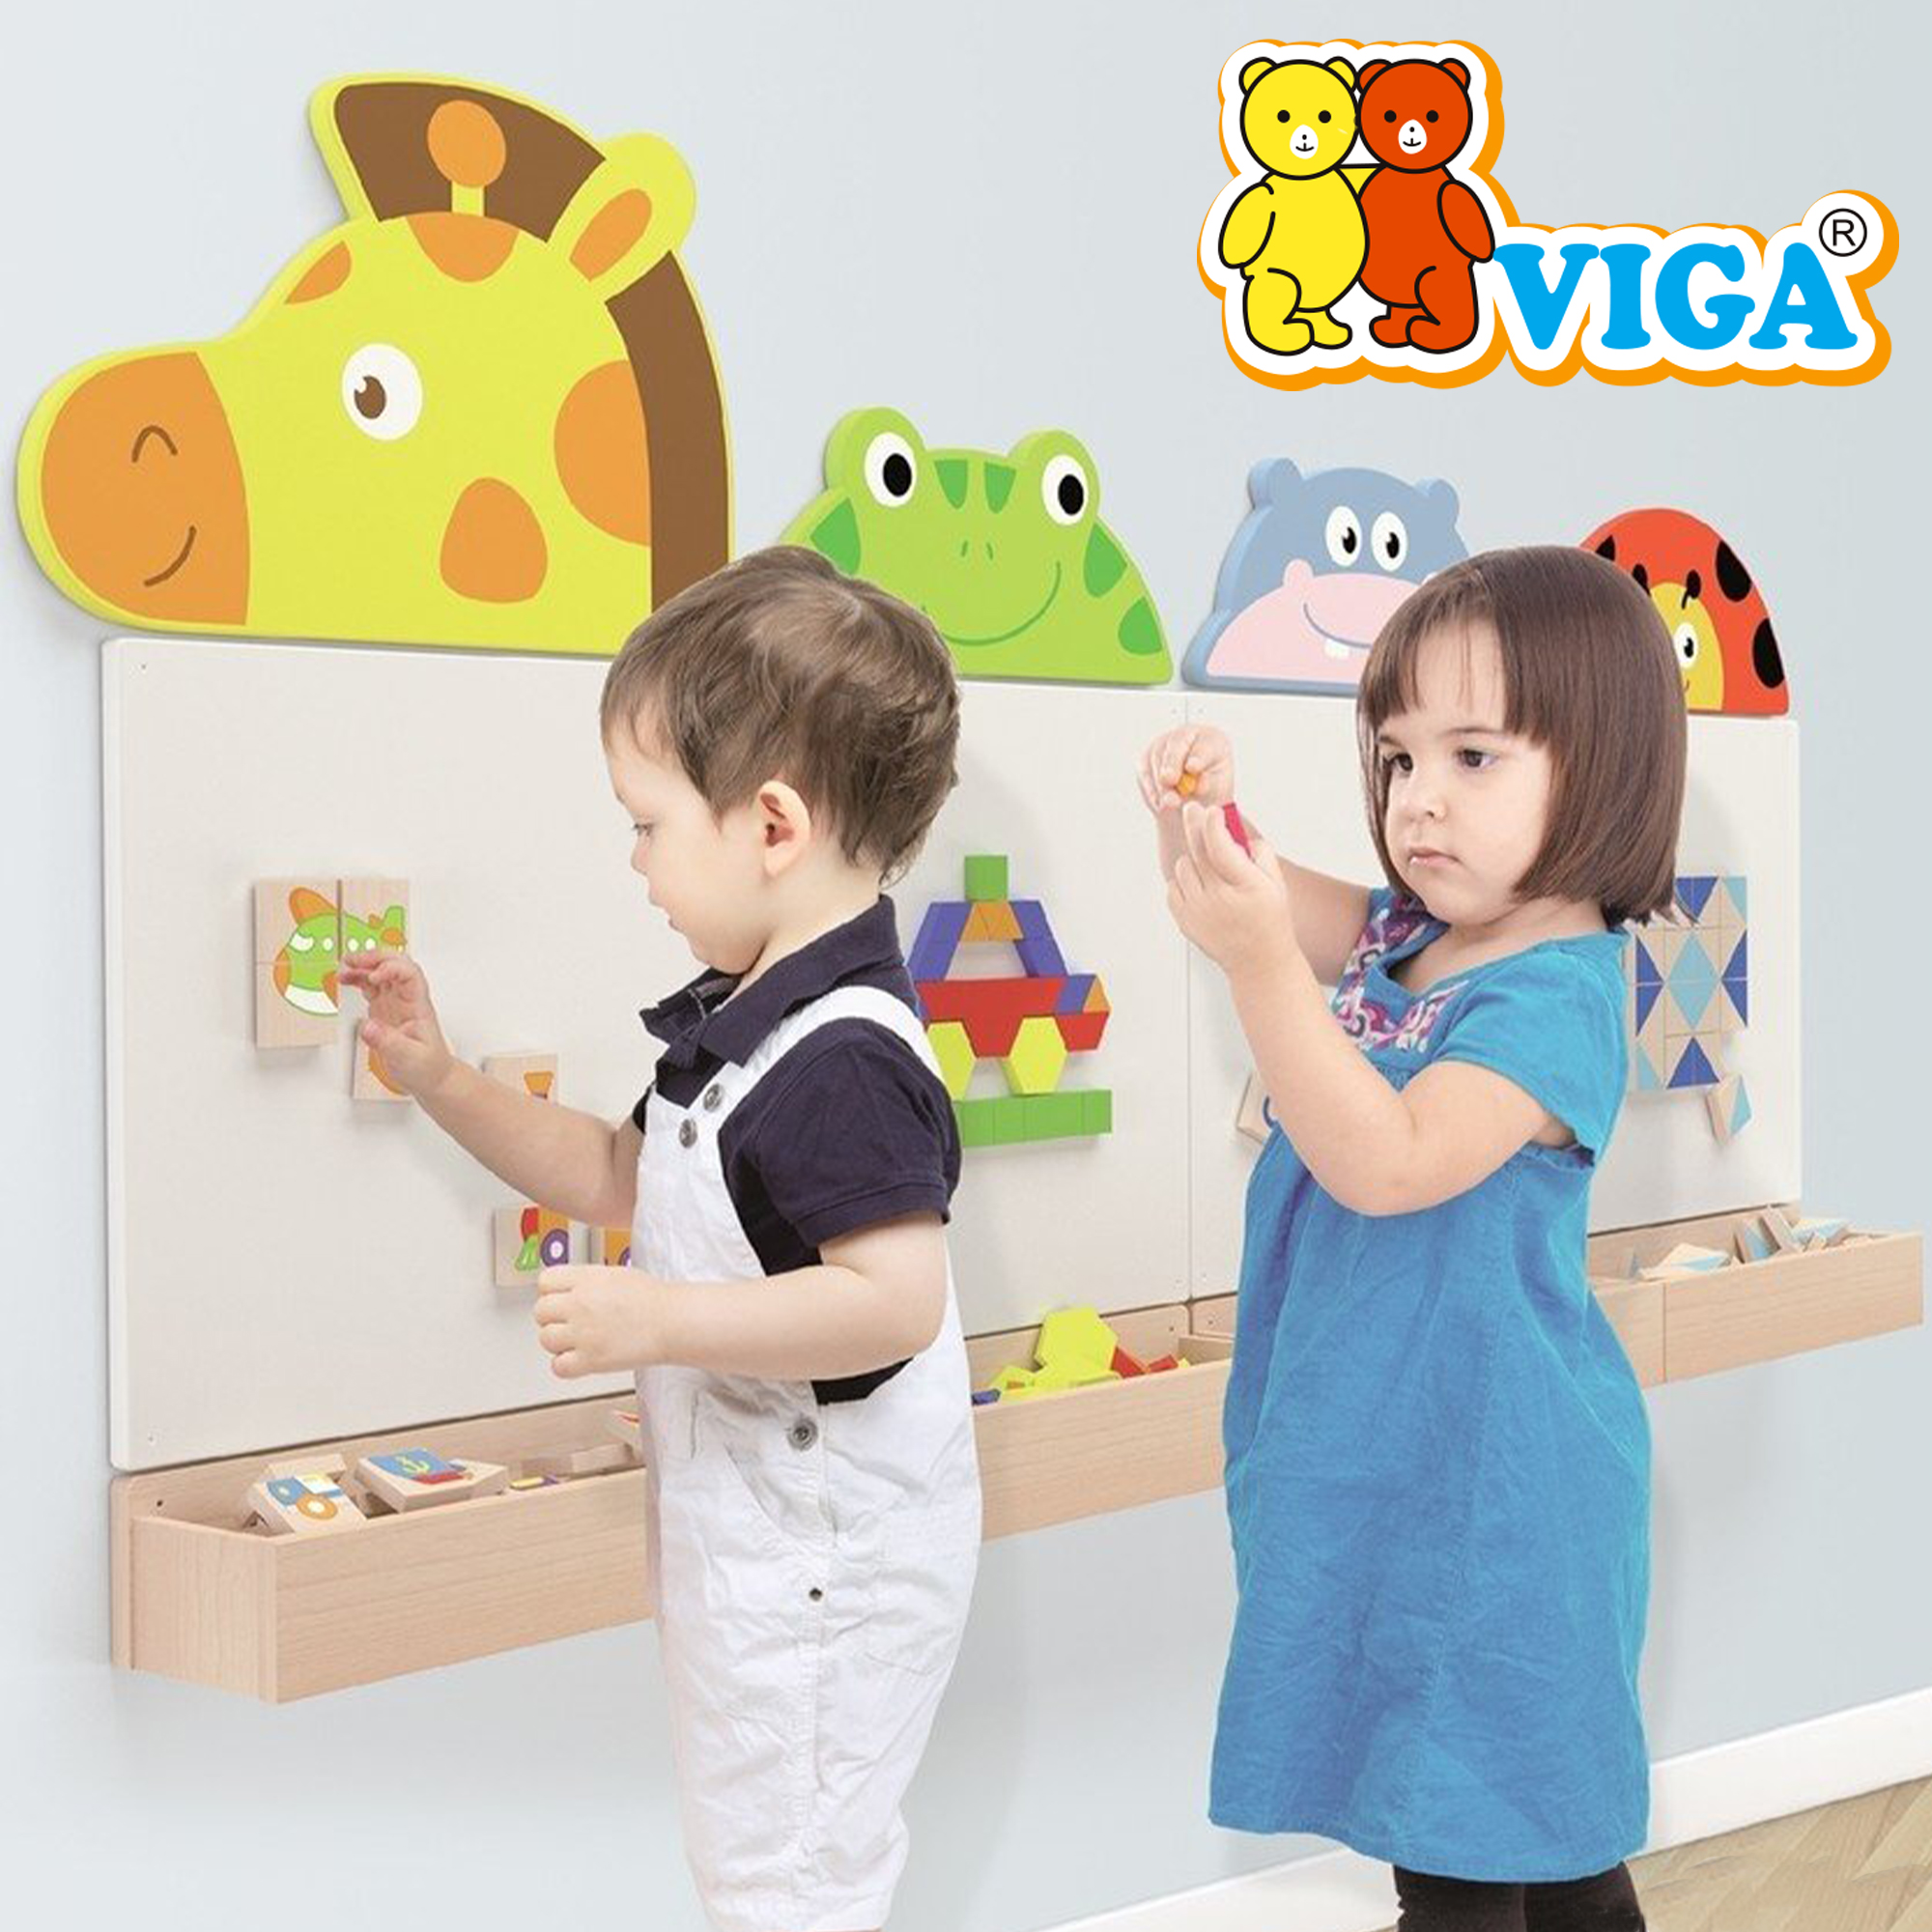 Деревянные игрушки Viga Toys – выбор осознанных родителей
